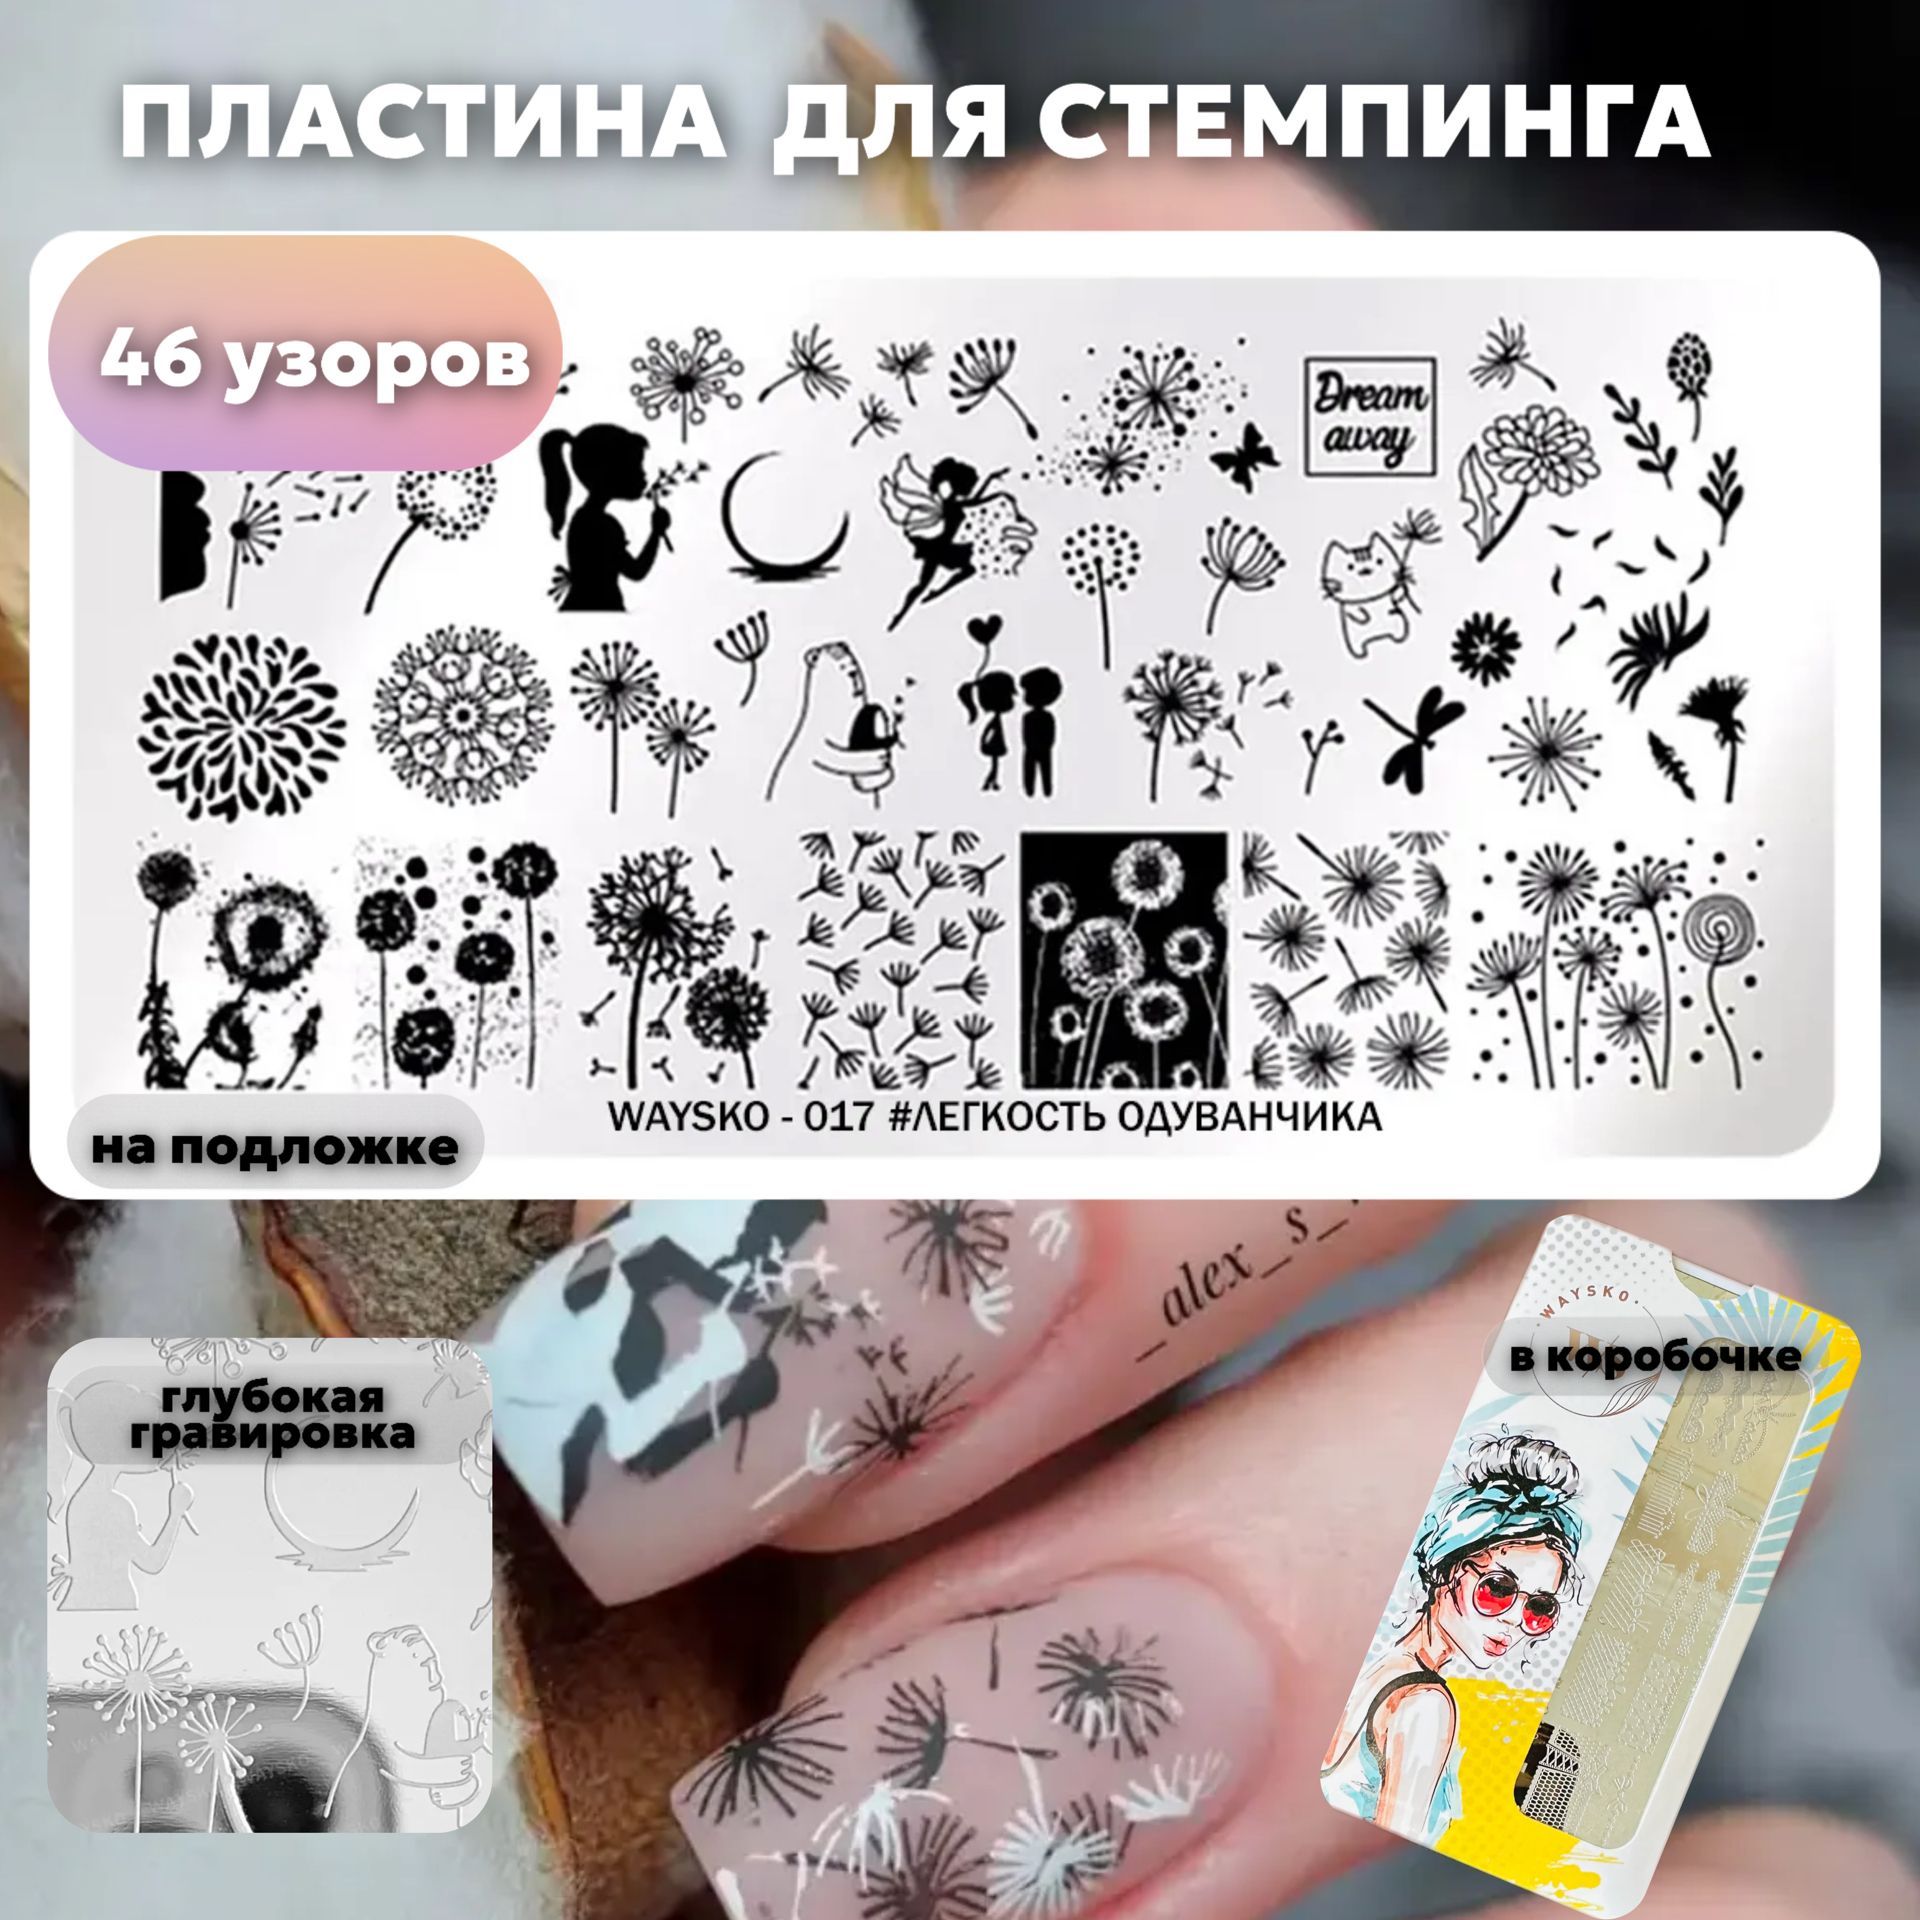 Маникюр и дизайн ногтей в г. Новосибирск от мастера Стрекоза